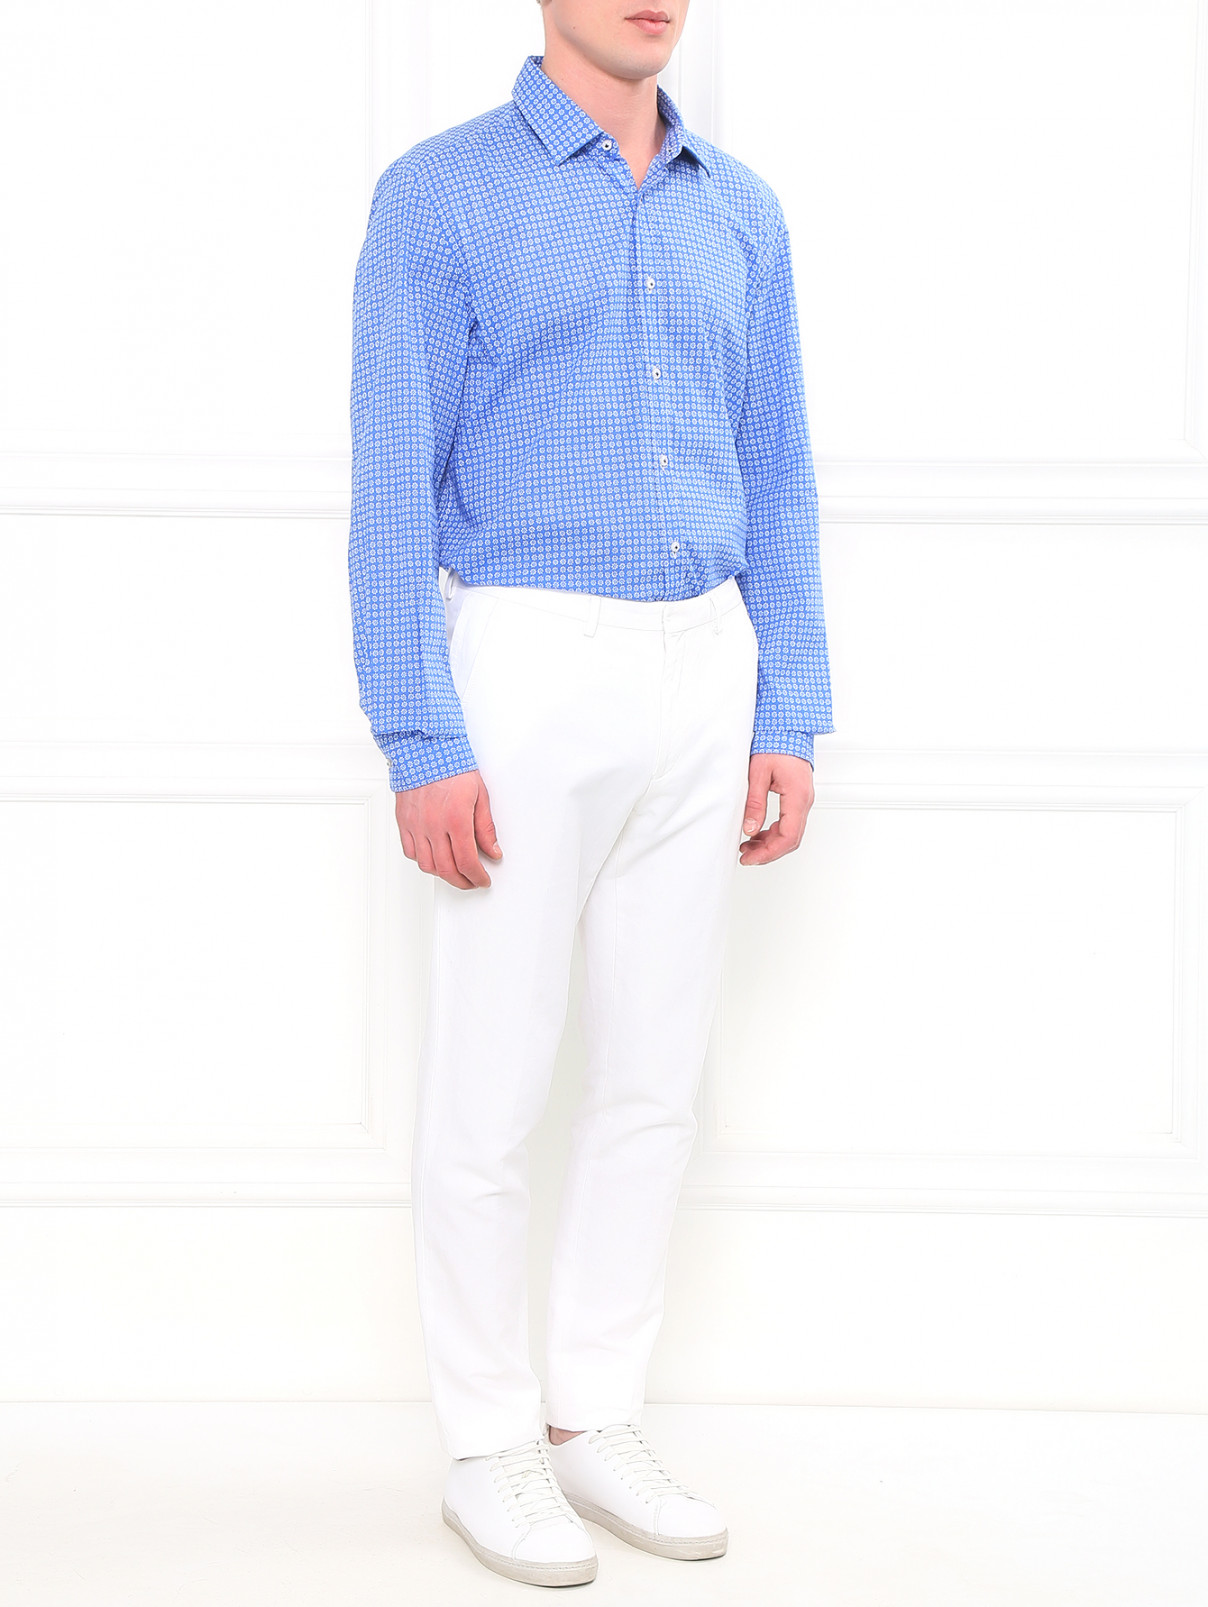 Прямые брюки из хлопка и льна Kenzo  –  Модель Общий вид  – Цвет:  Белый